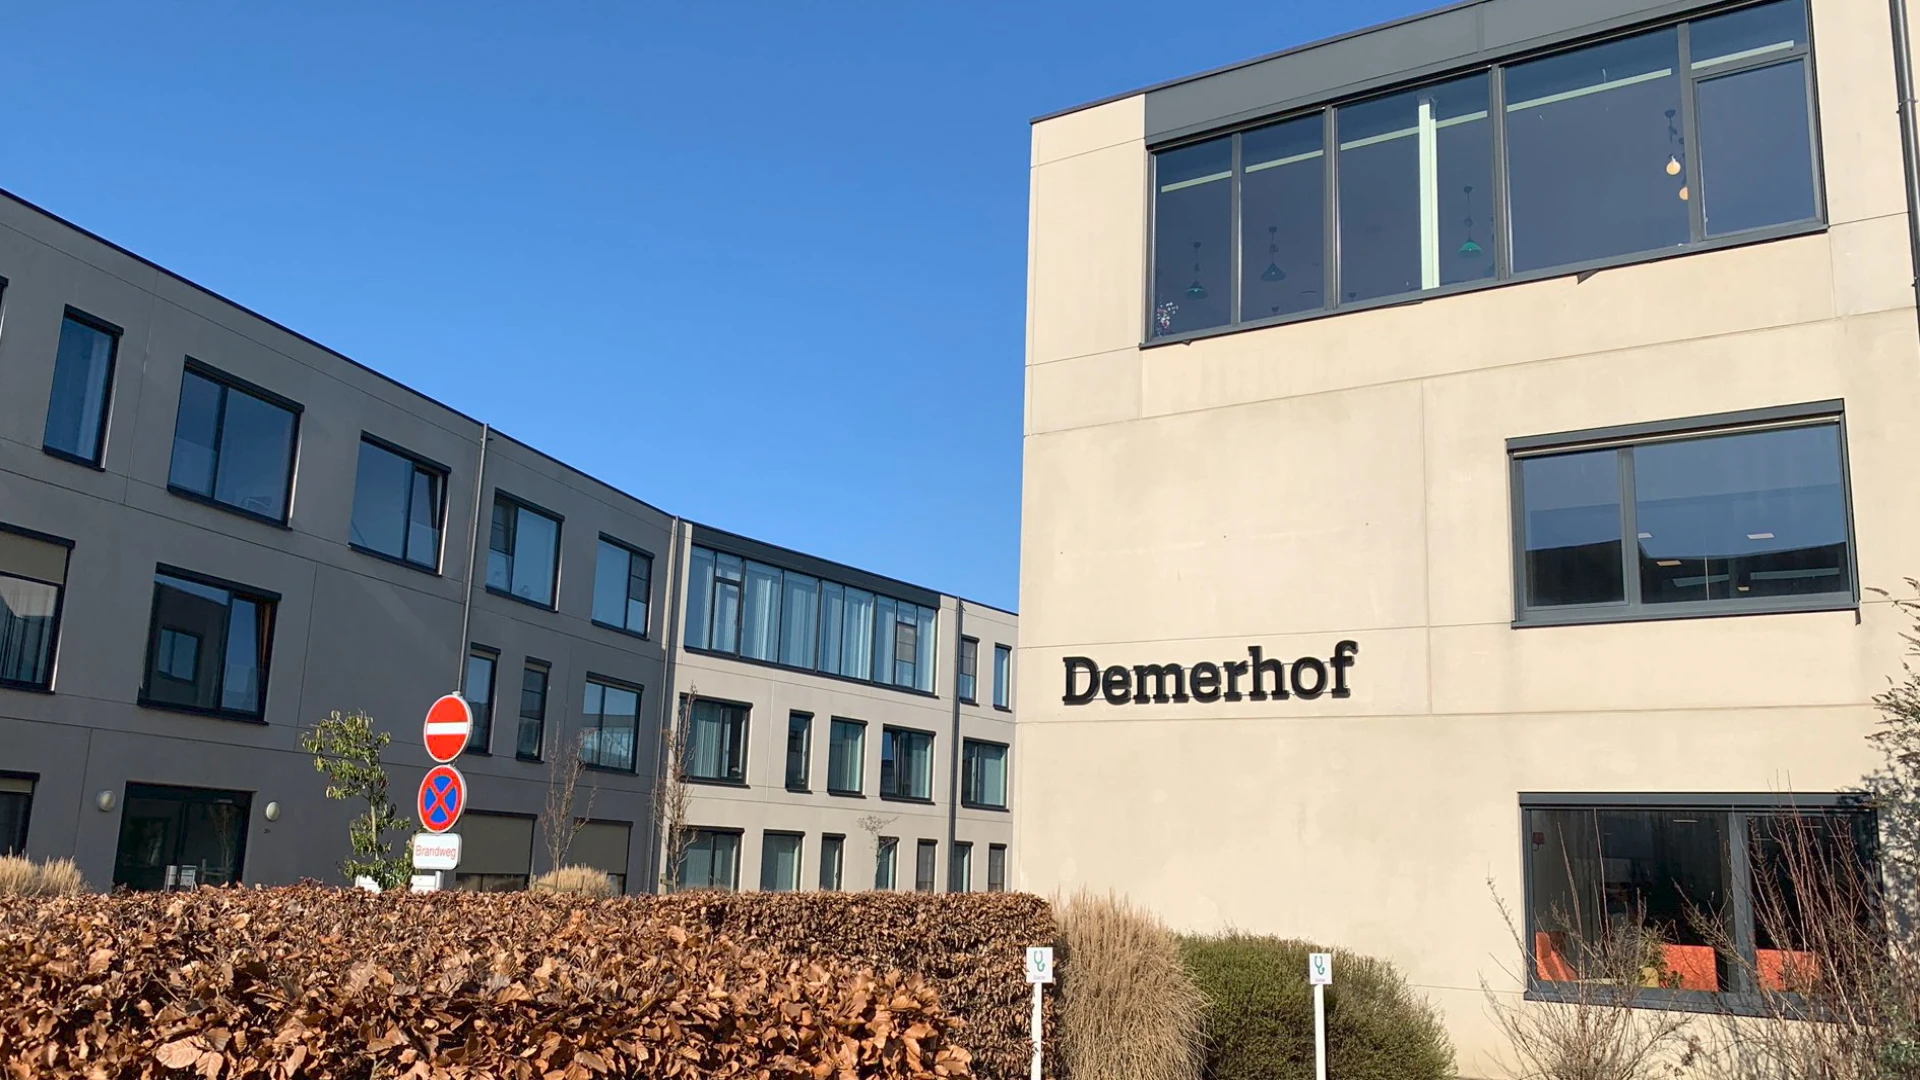 Schurft in woonzorgcentrum Demerhof in Aarschot: één bewoner in quarantaine